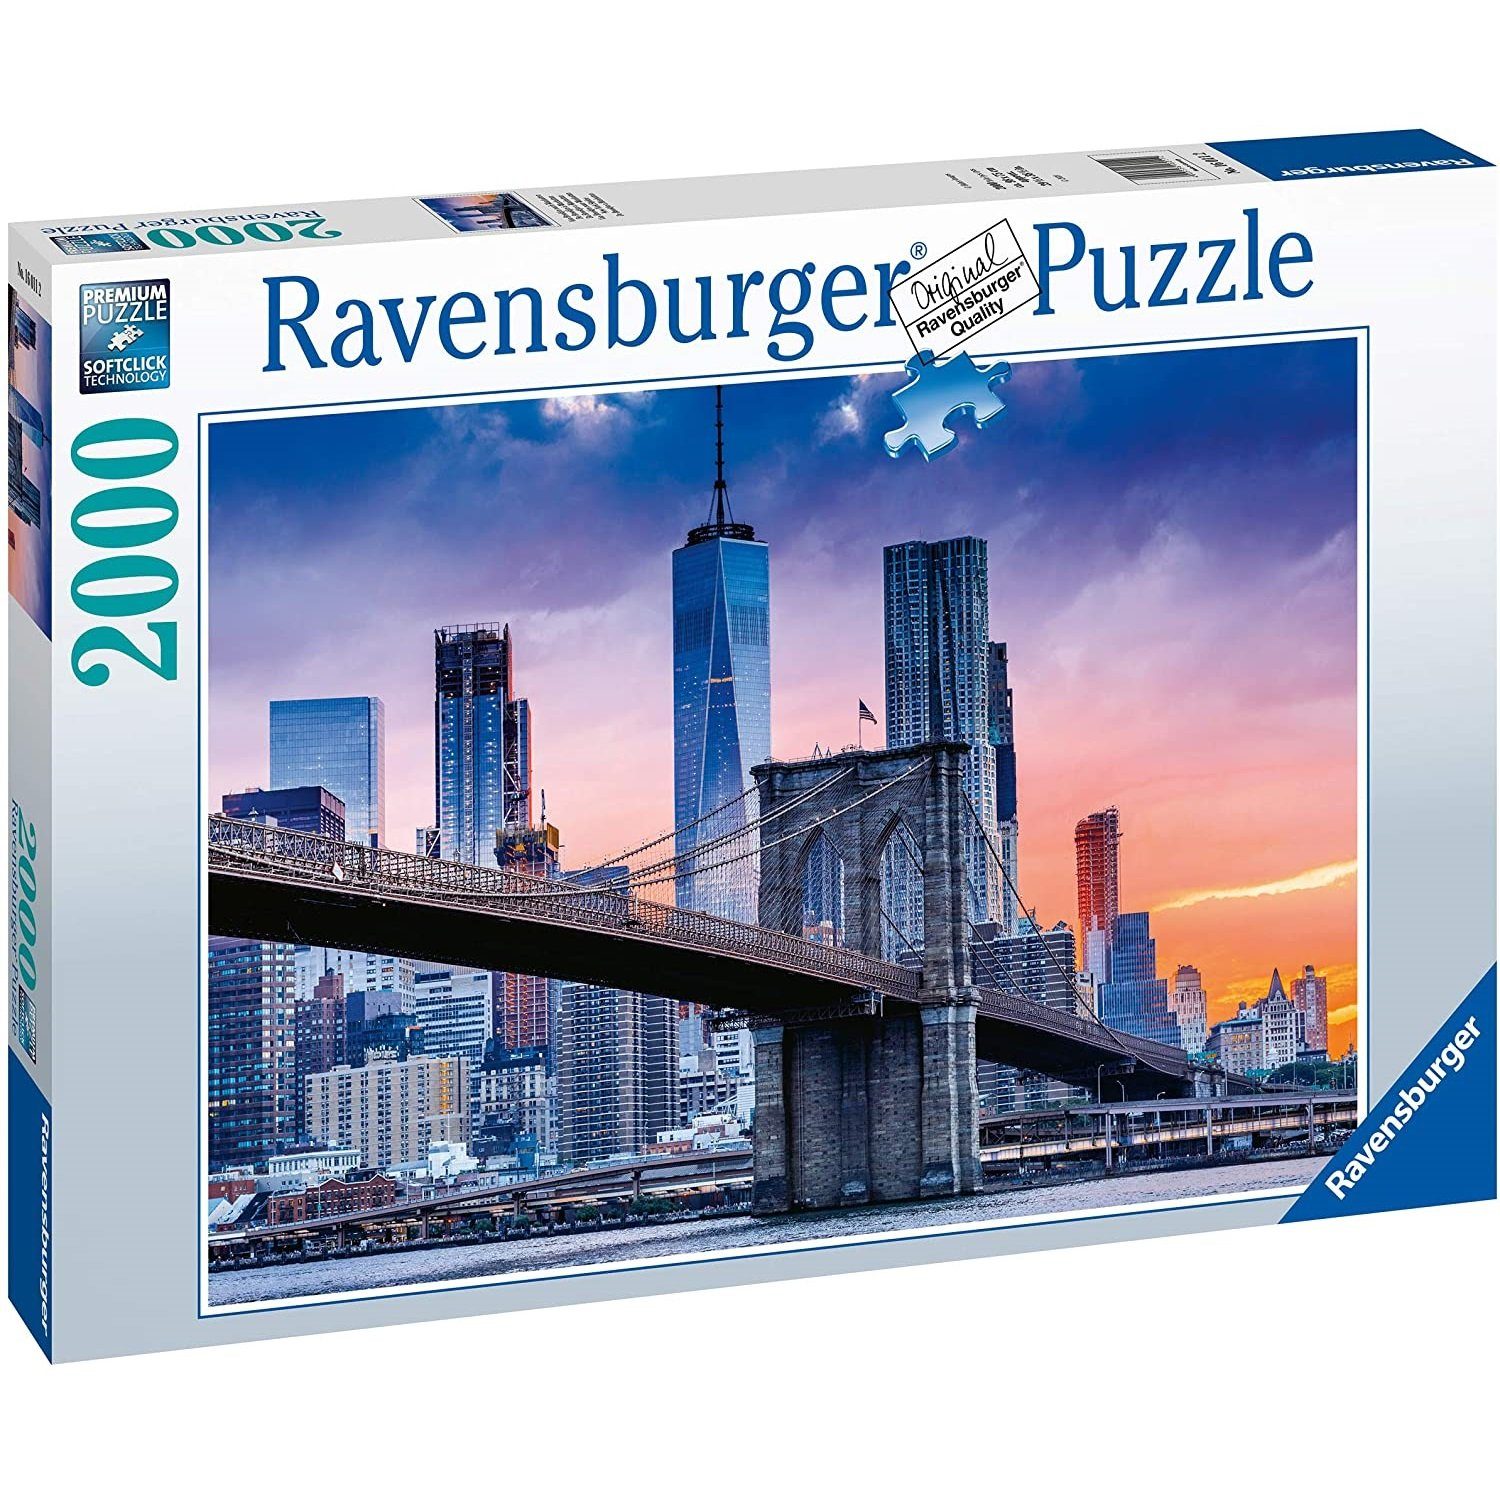 Ravensburger Puzzle Ravensburger - Von Brooklyn nach Manhatten, 2000 Teile Puzzle, 2000 Puzzleteile